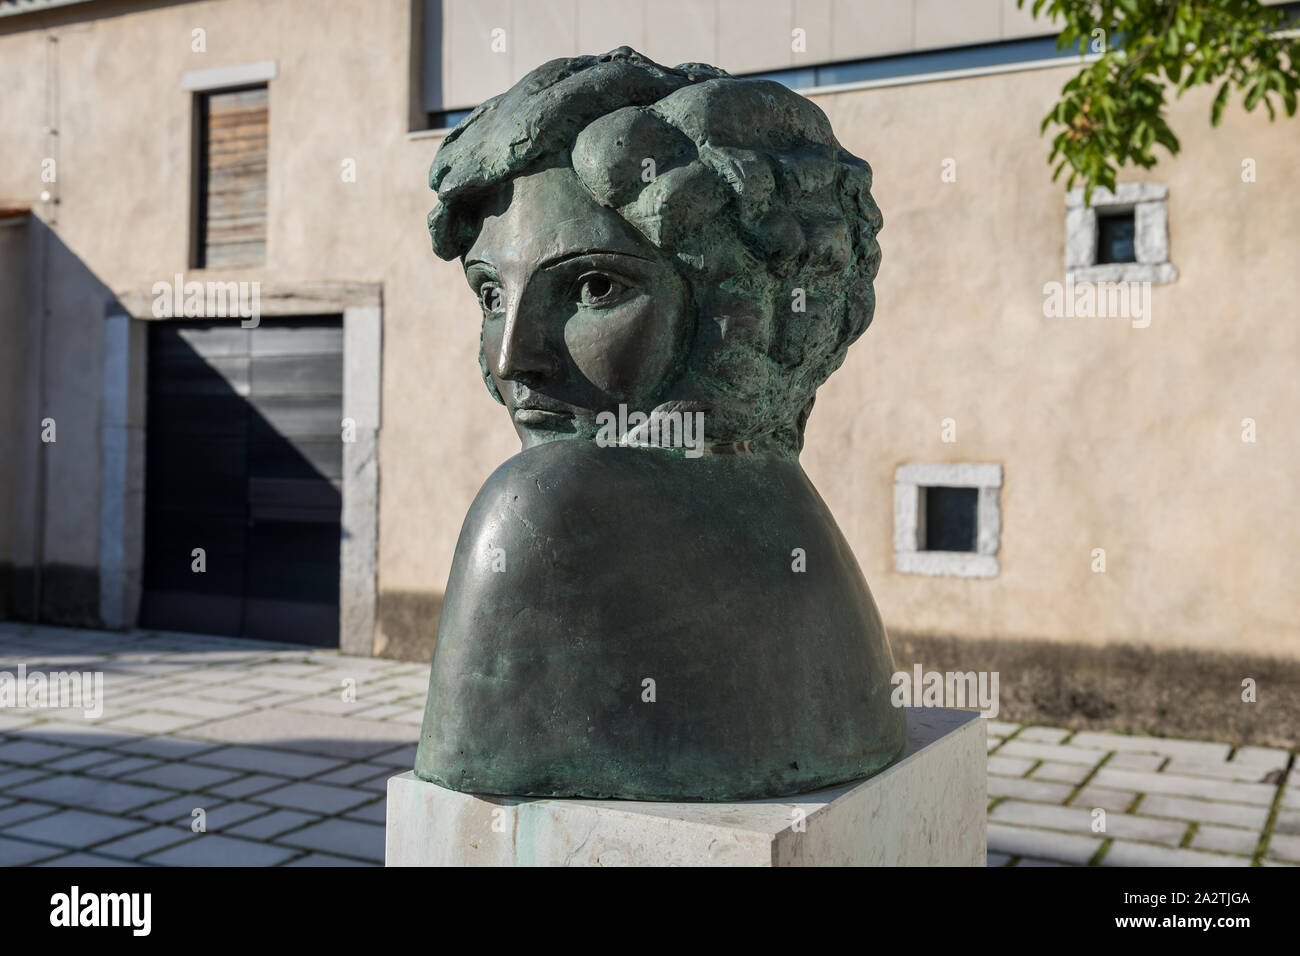 Statue de la célèbre actrice slovène et beauty queen Ida Kravanja Lida Italien, connue sous son pseudonyme Ita Rina - Divaca, Slovénie Banque D'Images